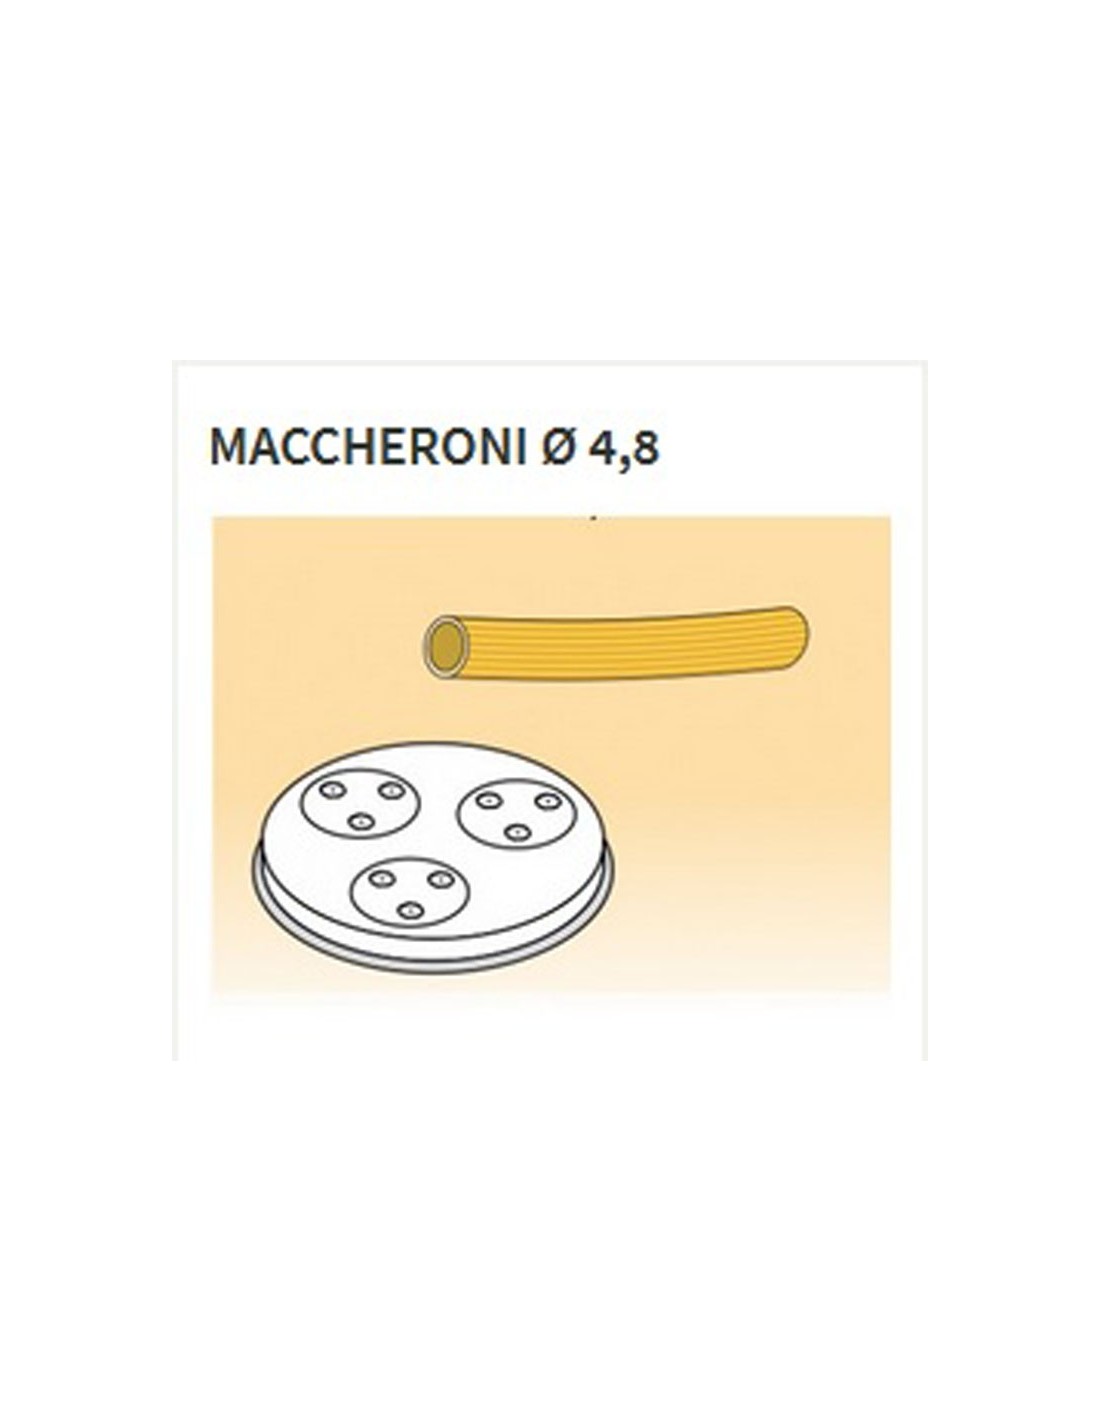 Trafile formati vari in lega ottone - Bronzo - Per macchina pasta fresca modello MPF25 - MPF4N - Maccheroni Ø 4.8 mm